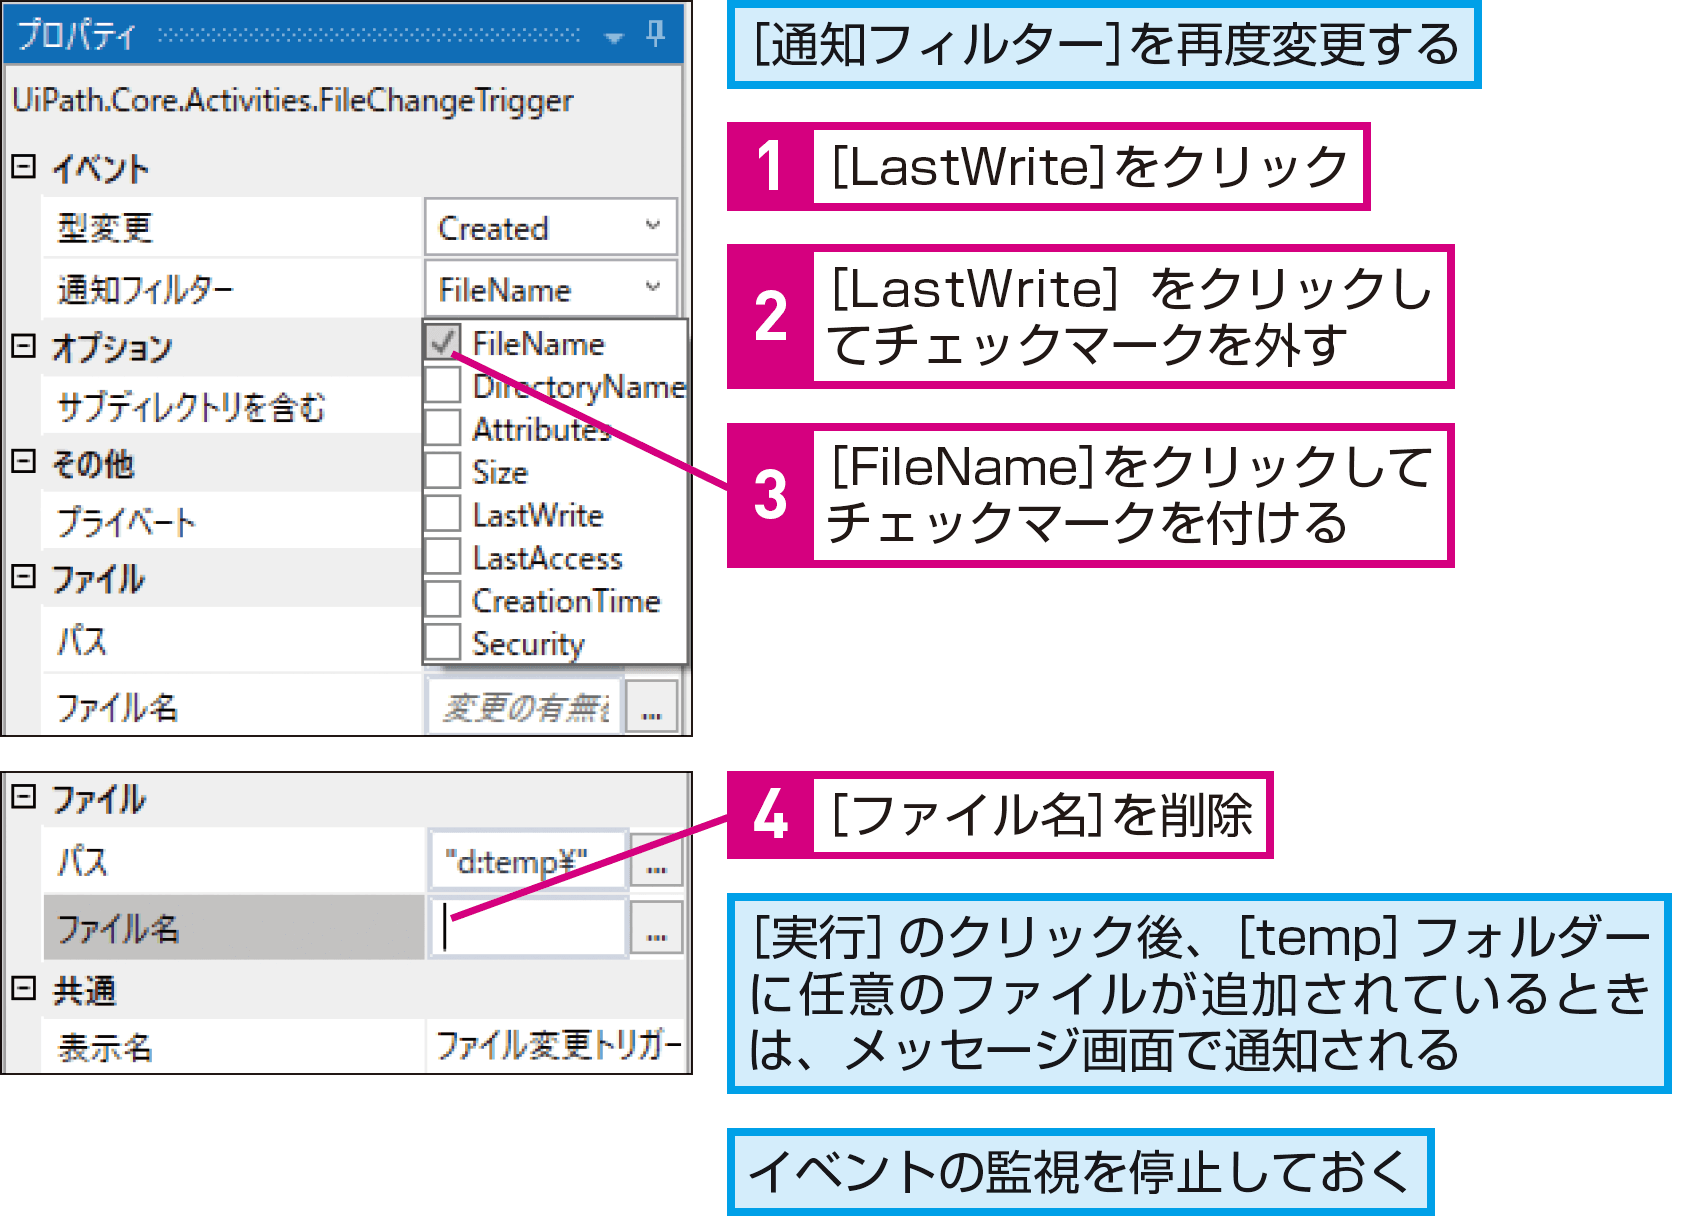 ファイルが更新・追加されたことを検知するには（イベントを監視） - できるUiPath